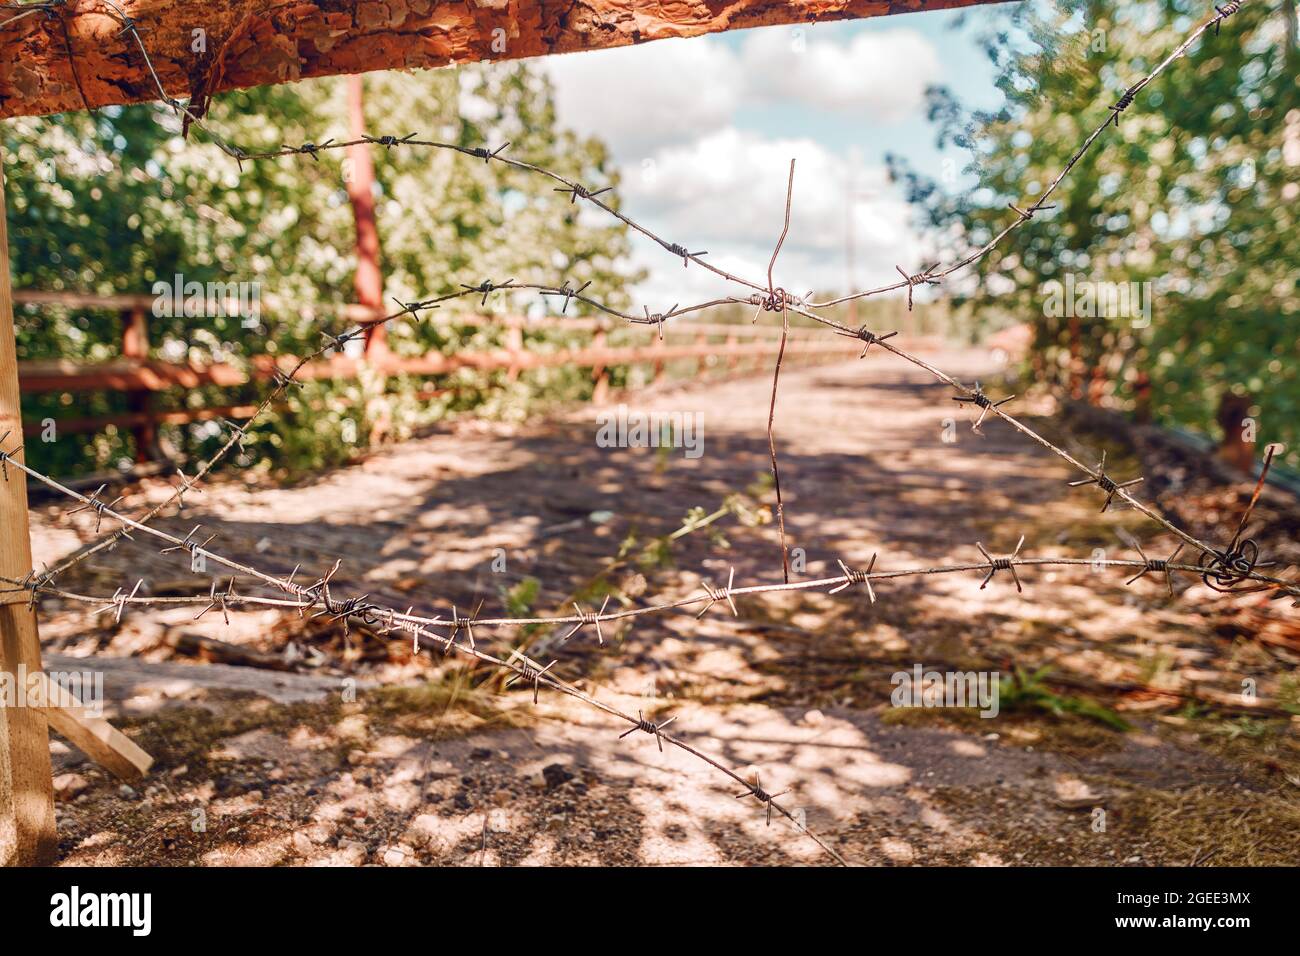 Rostiger Stacheldraht am Eingang zum verbotenen Bereich mit einer idyllischen, entkoksten Landschaft dahinter Stockfoto